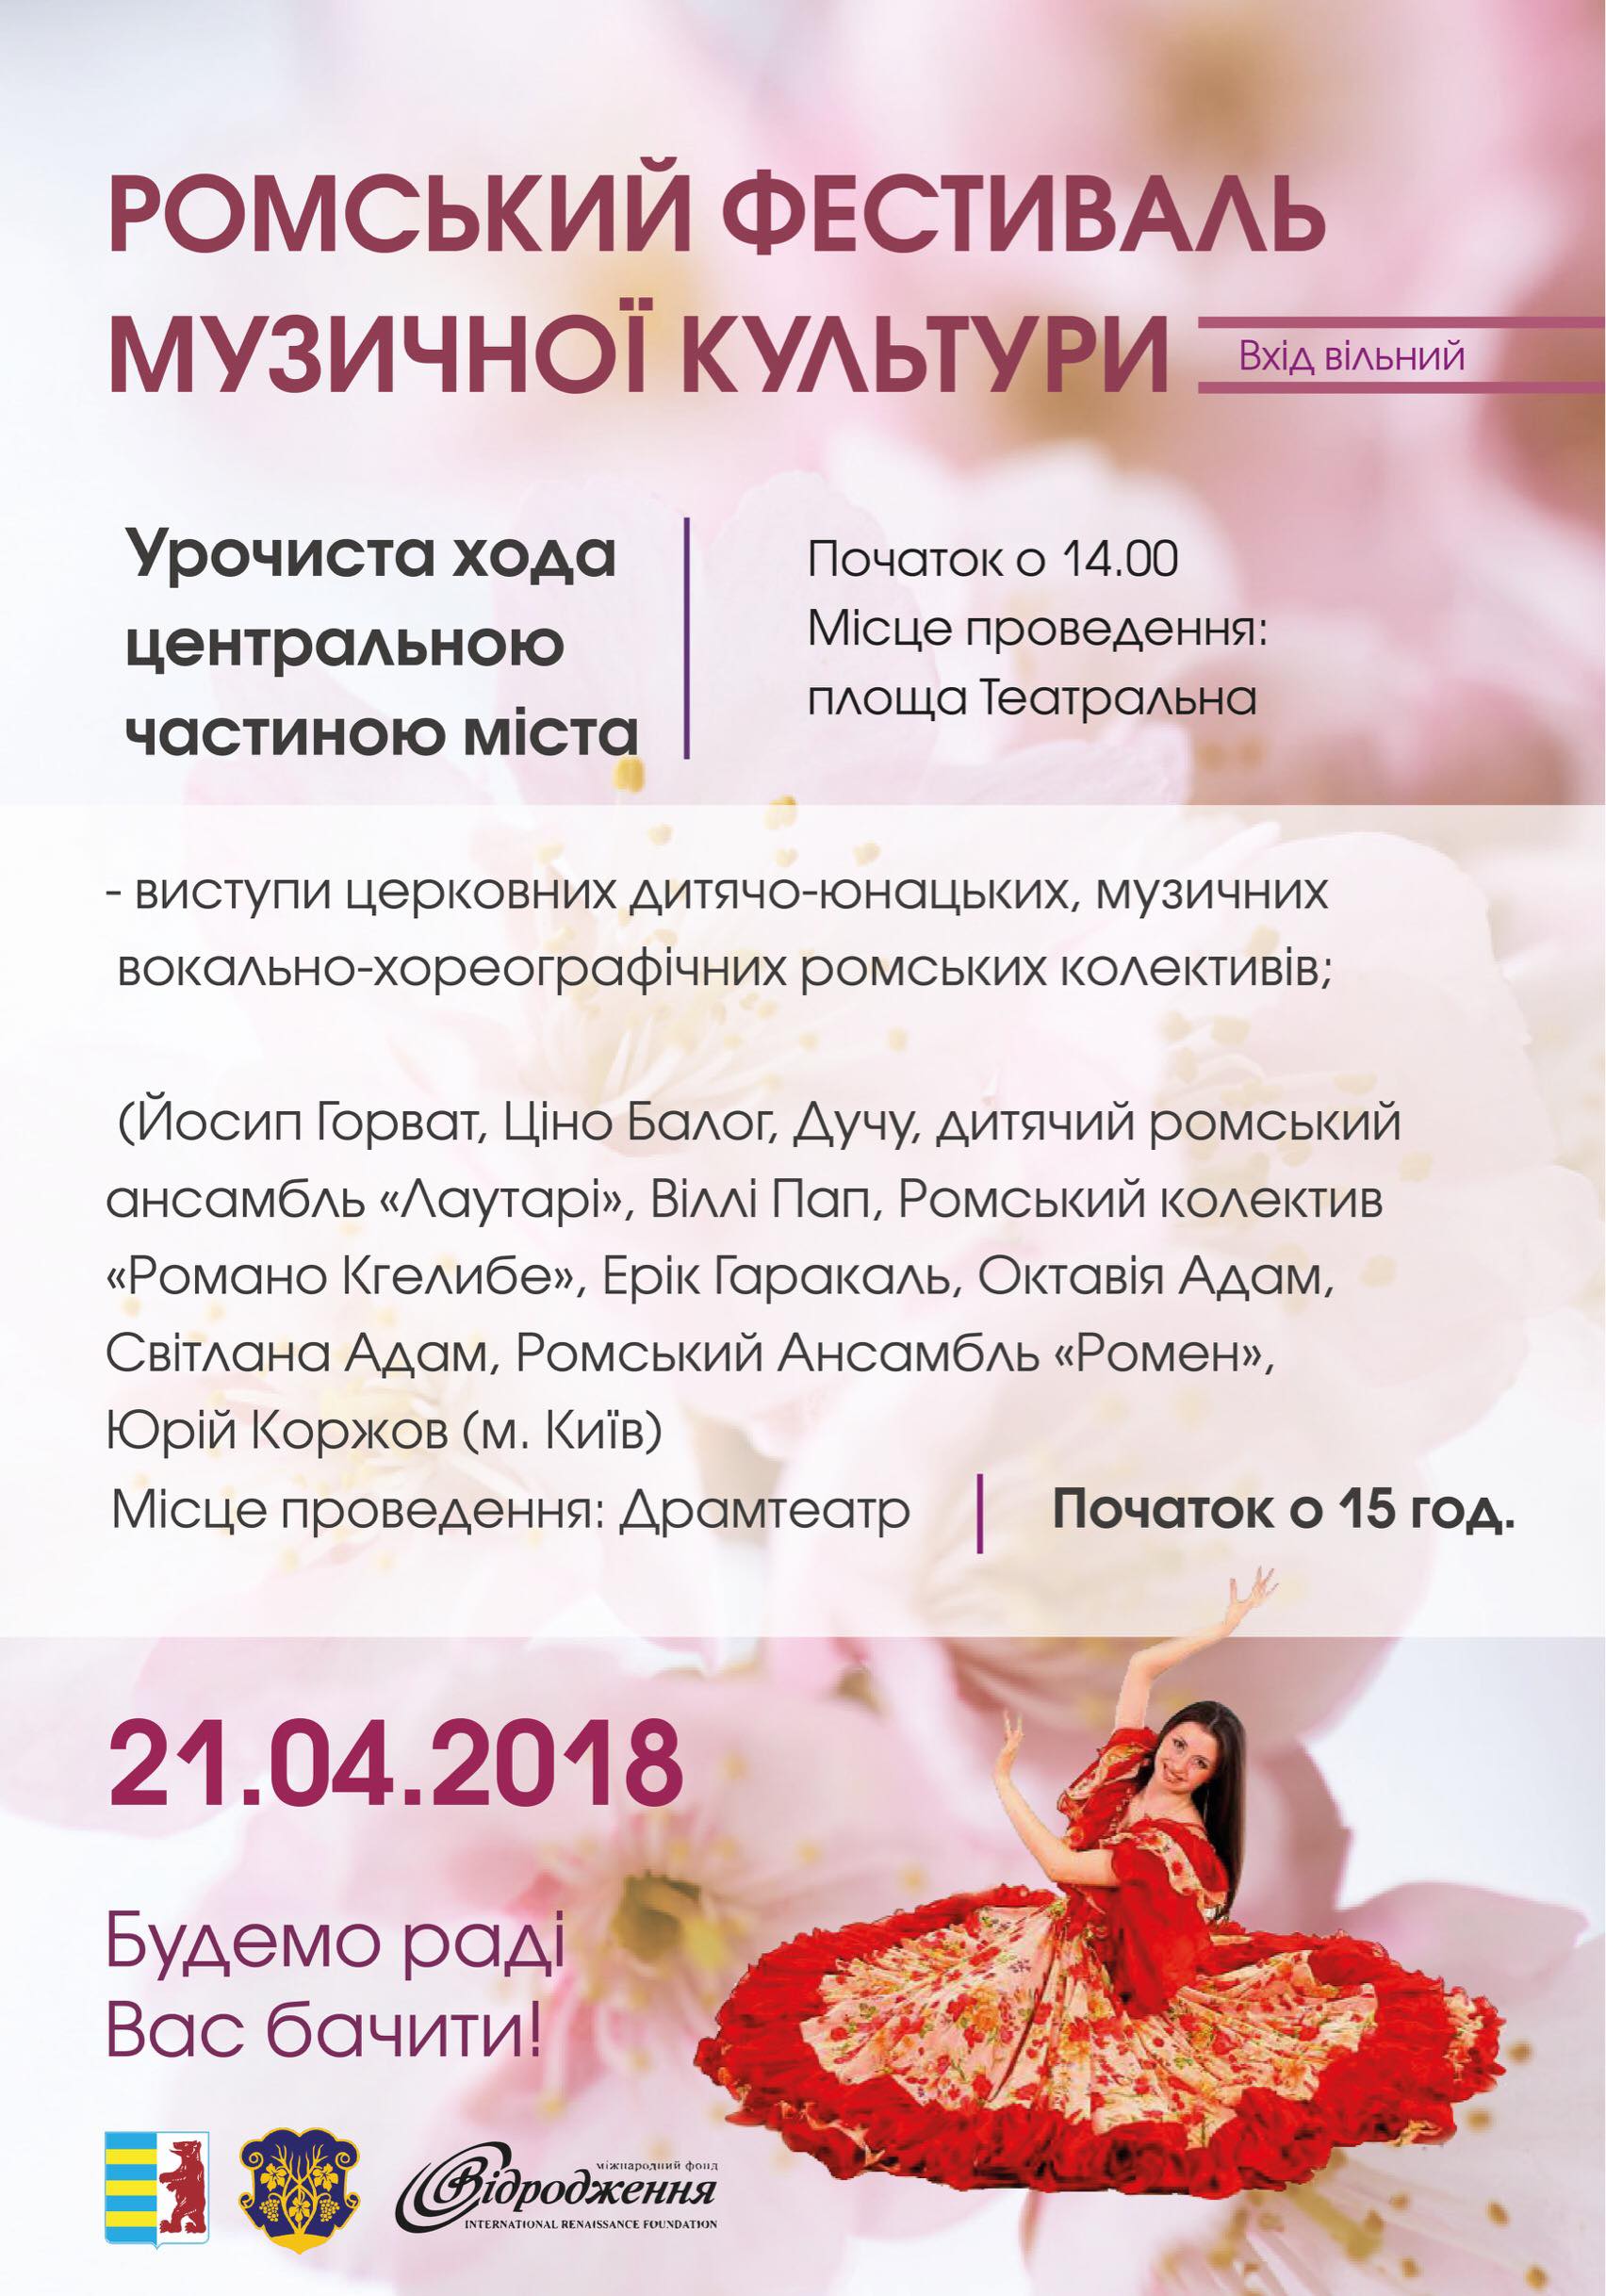 21 квітня в Ужгороді відбудеться Ромський фестиваль музичної культури, в межах відзначення Міжнародного дня ромів.